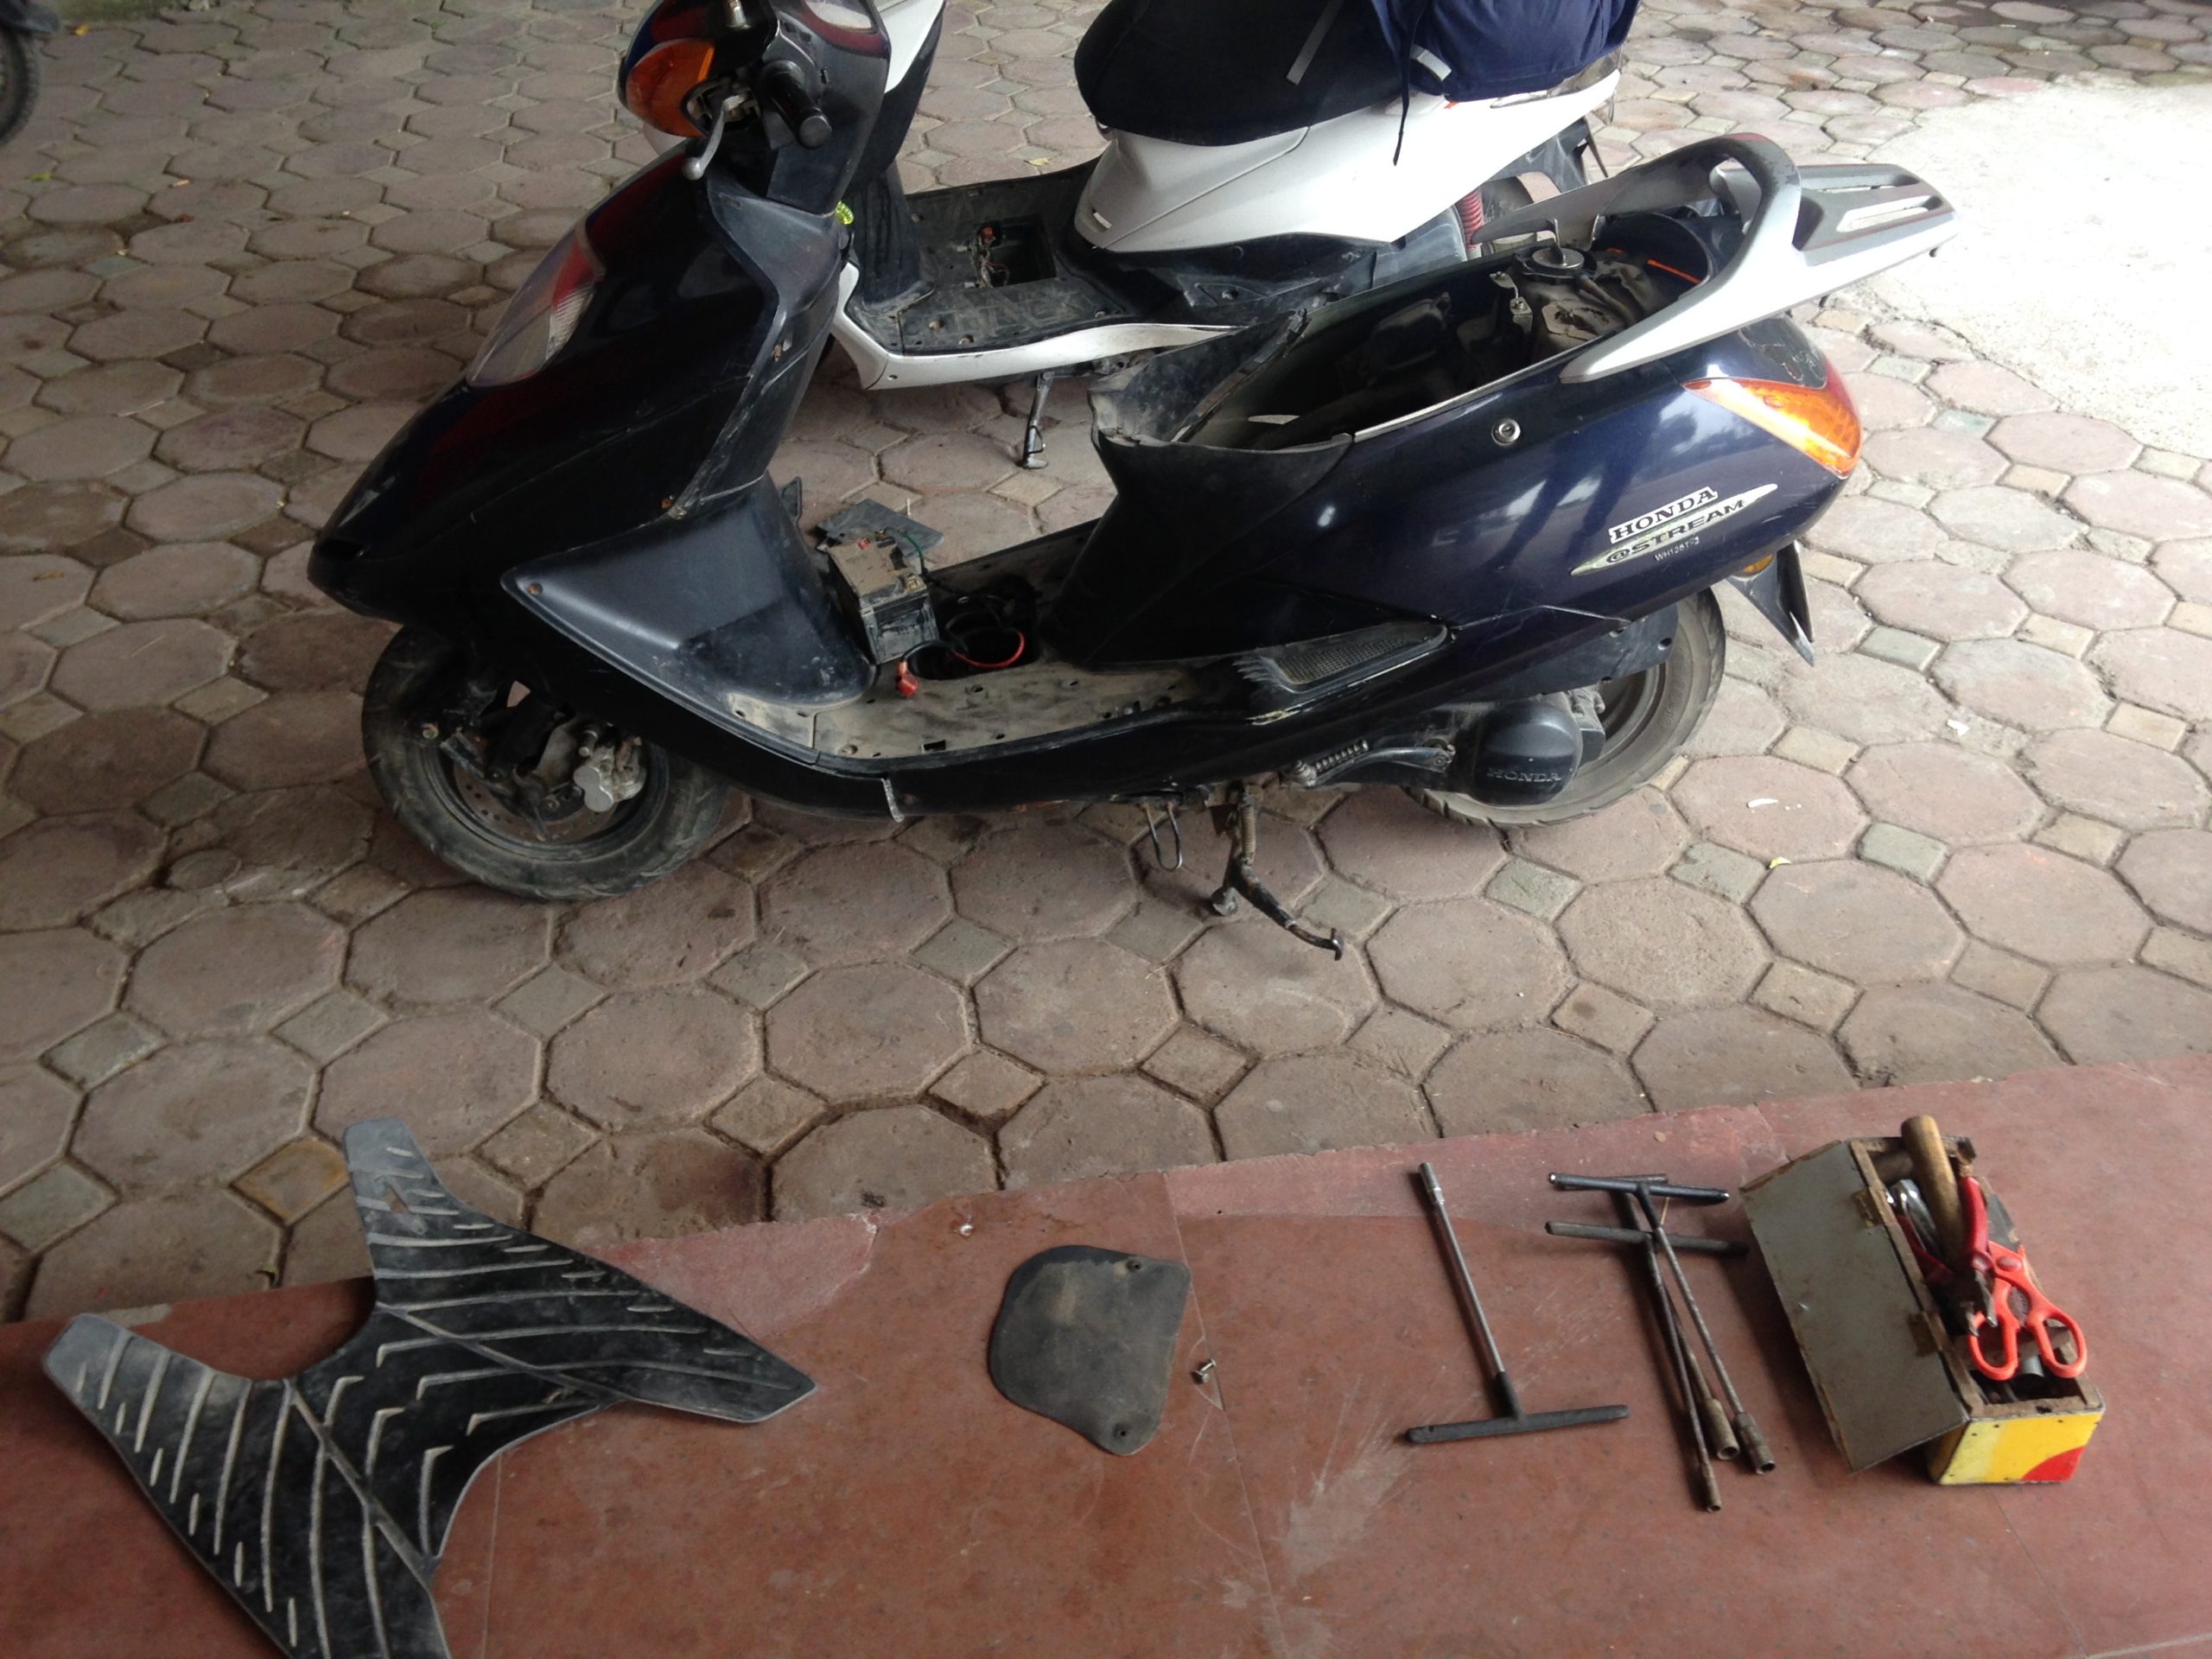 Broken Motorbike in Vietnam